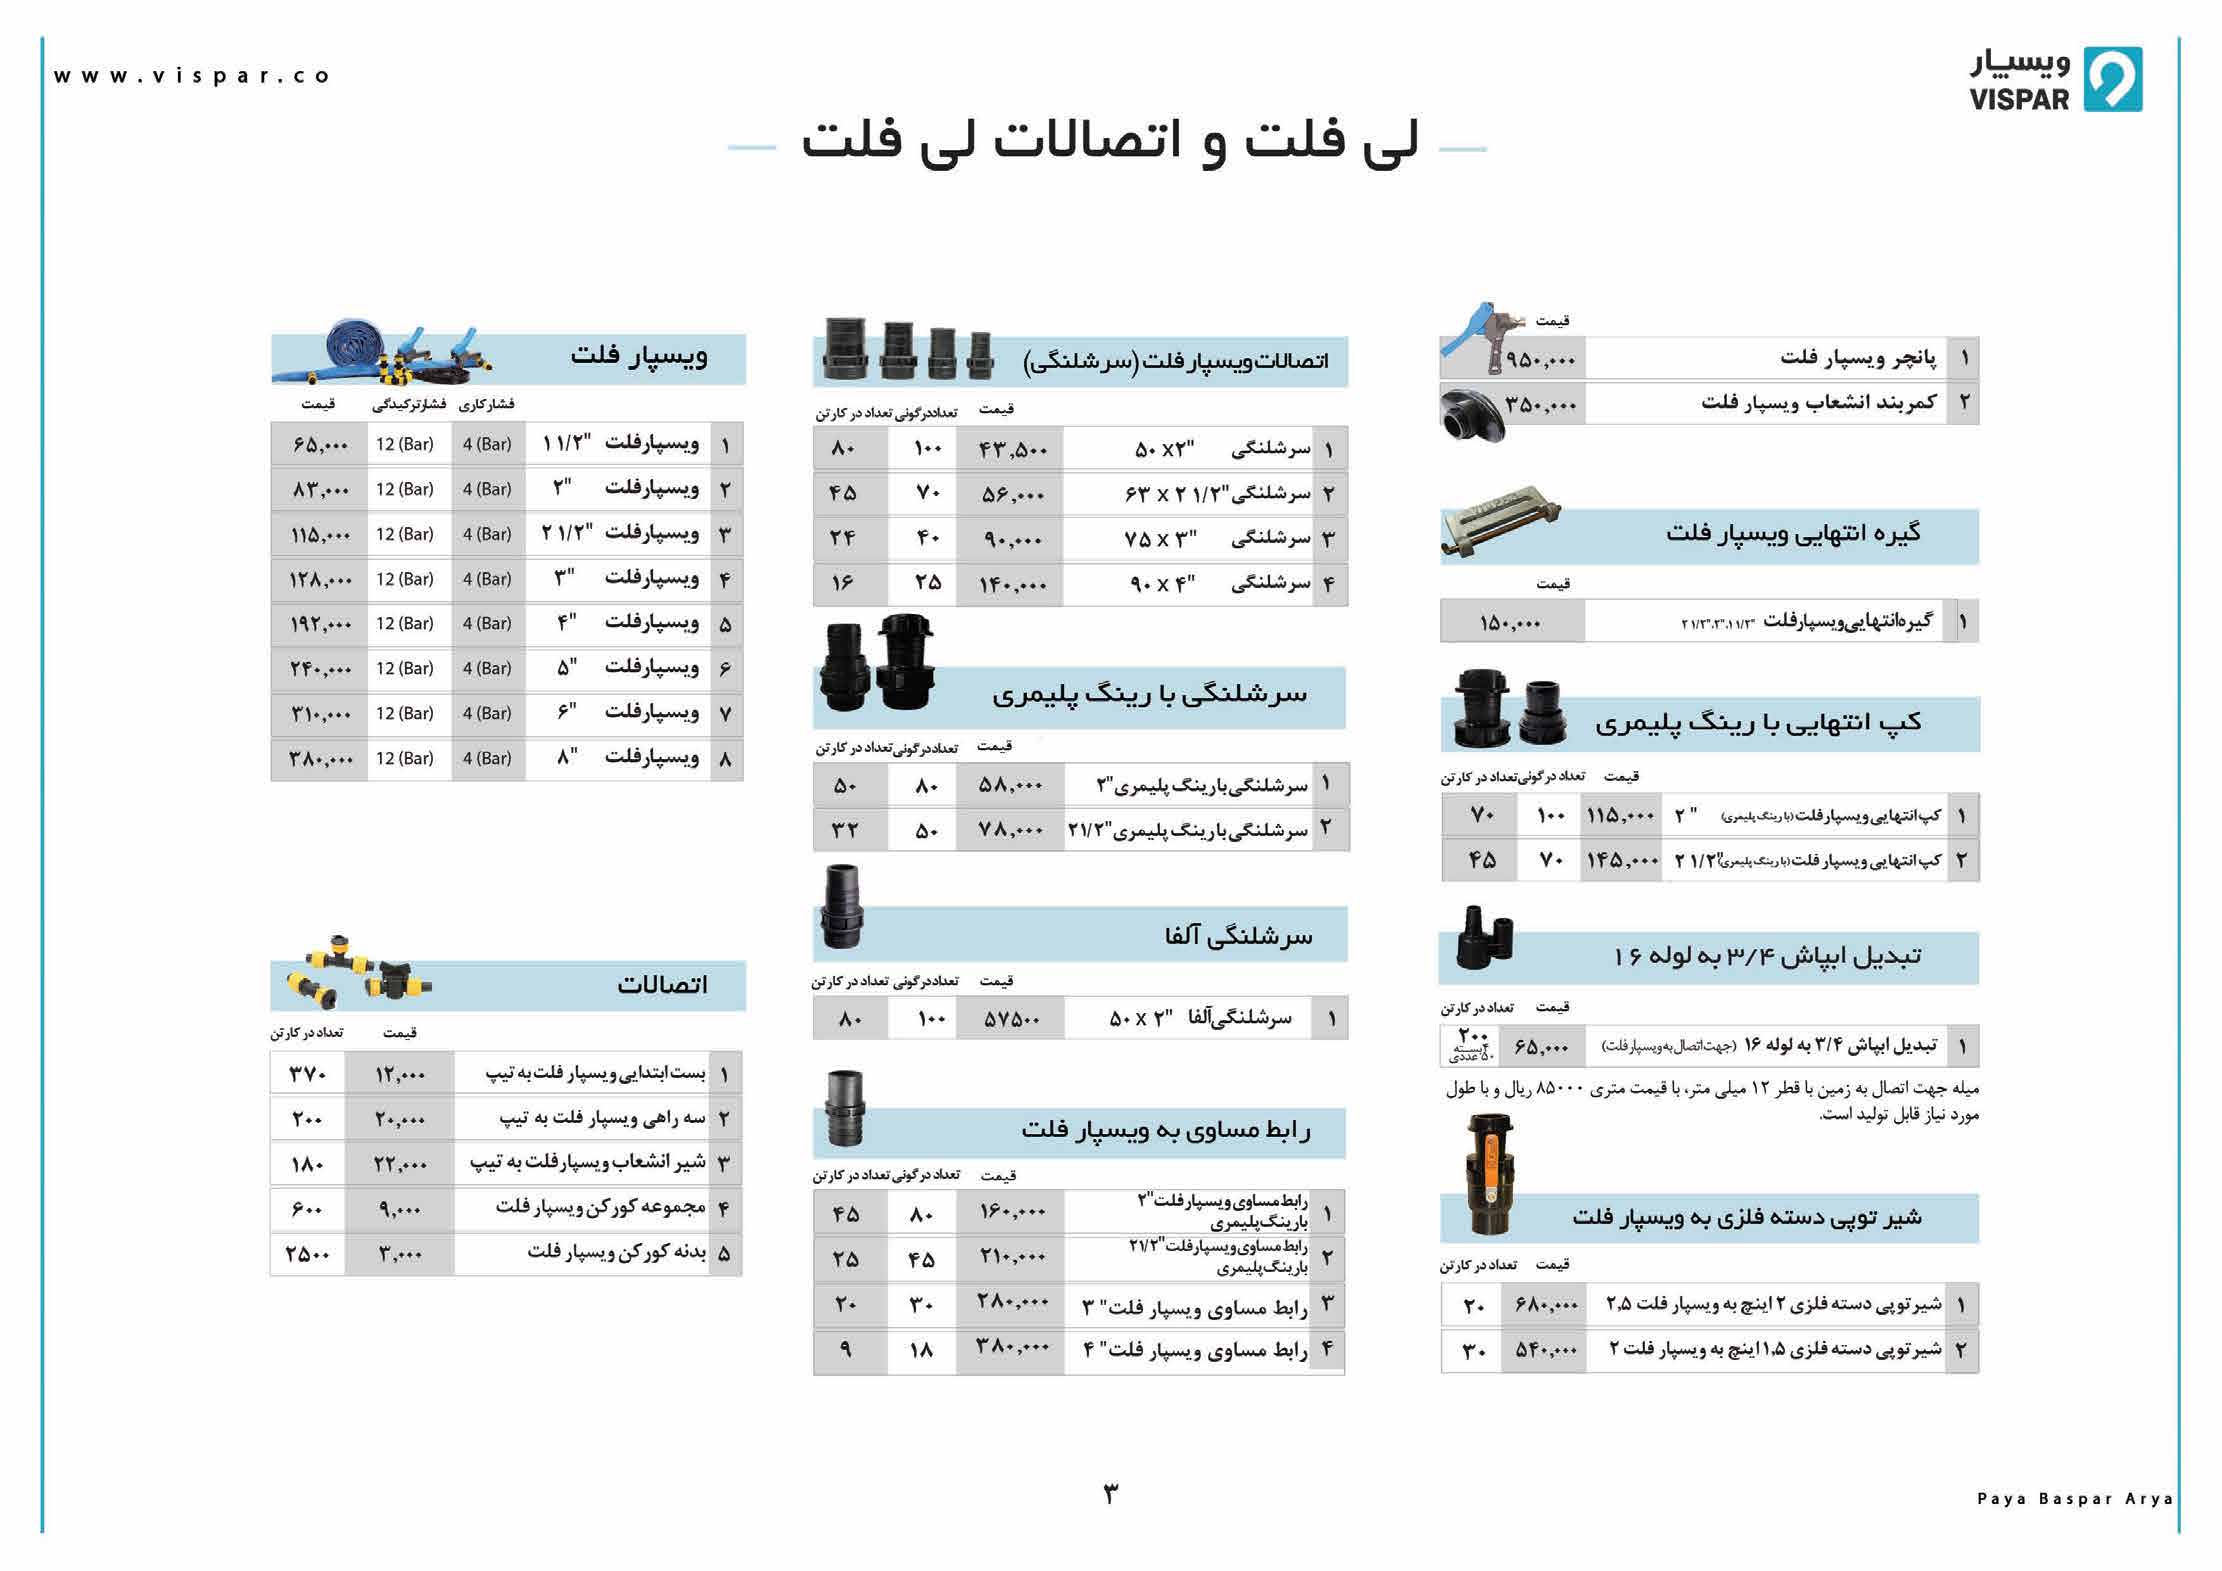 لیست قیمت پایابسپار (ویسپار) – بهمن ماه 98 - صفحه 3